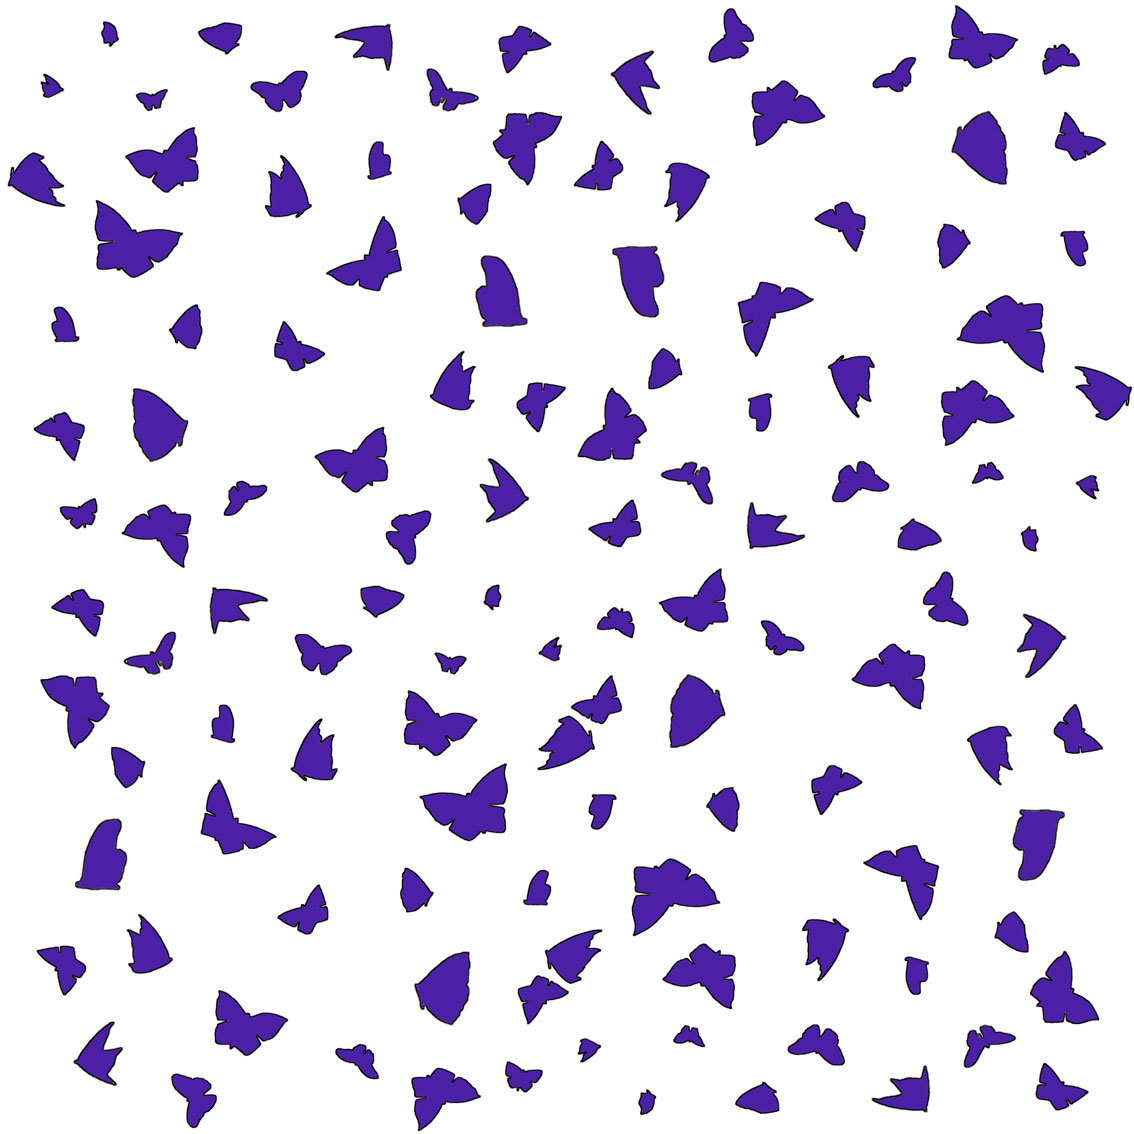 Purple Butterflies on White Papillon-lépidoptère-sphynx-aurore-bombyx-paon-du-jour-monarque Thierry Bisch artiste peintre animaux tableau art  nature biodiversité conservation  